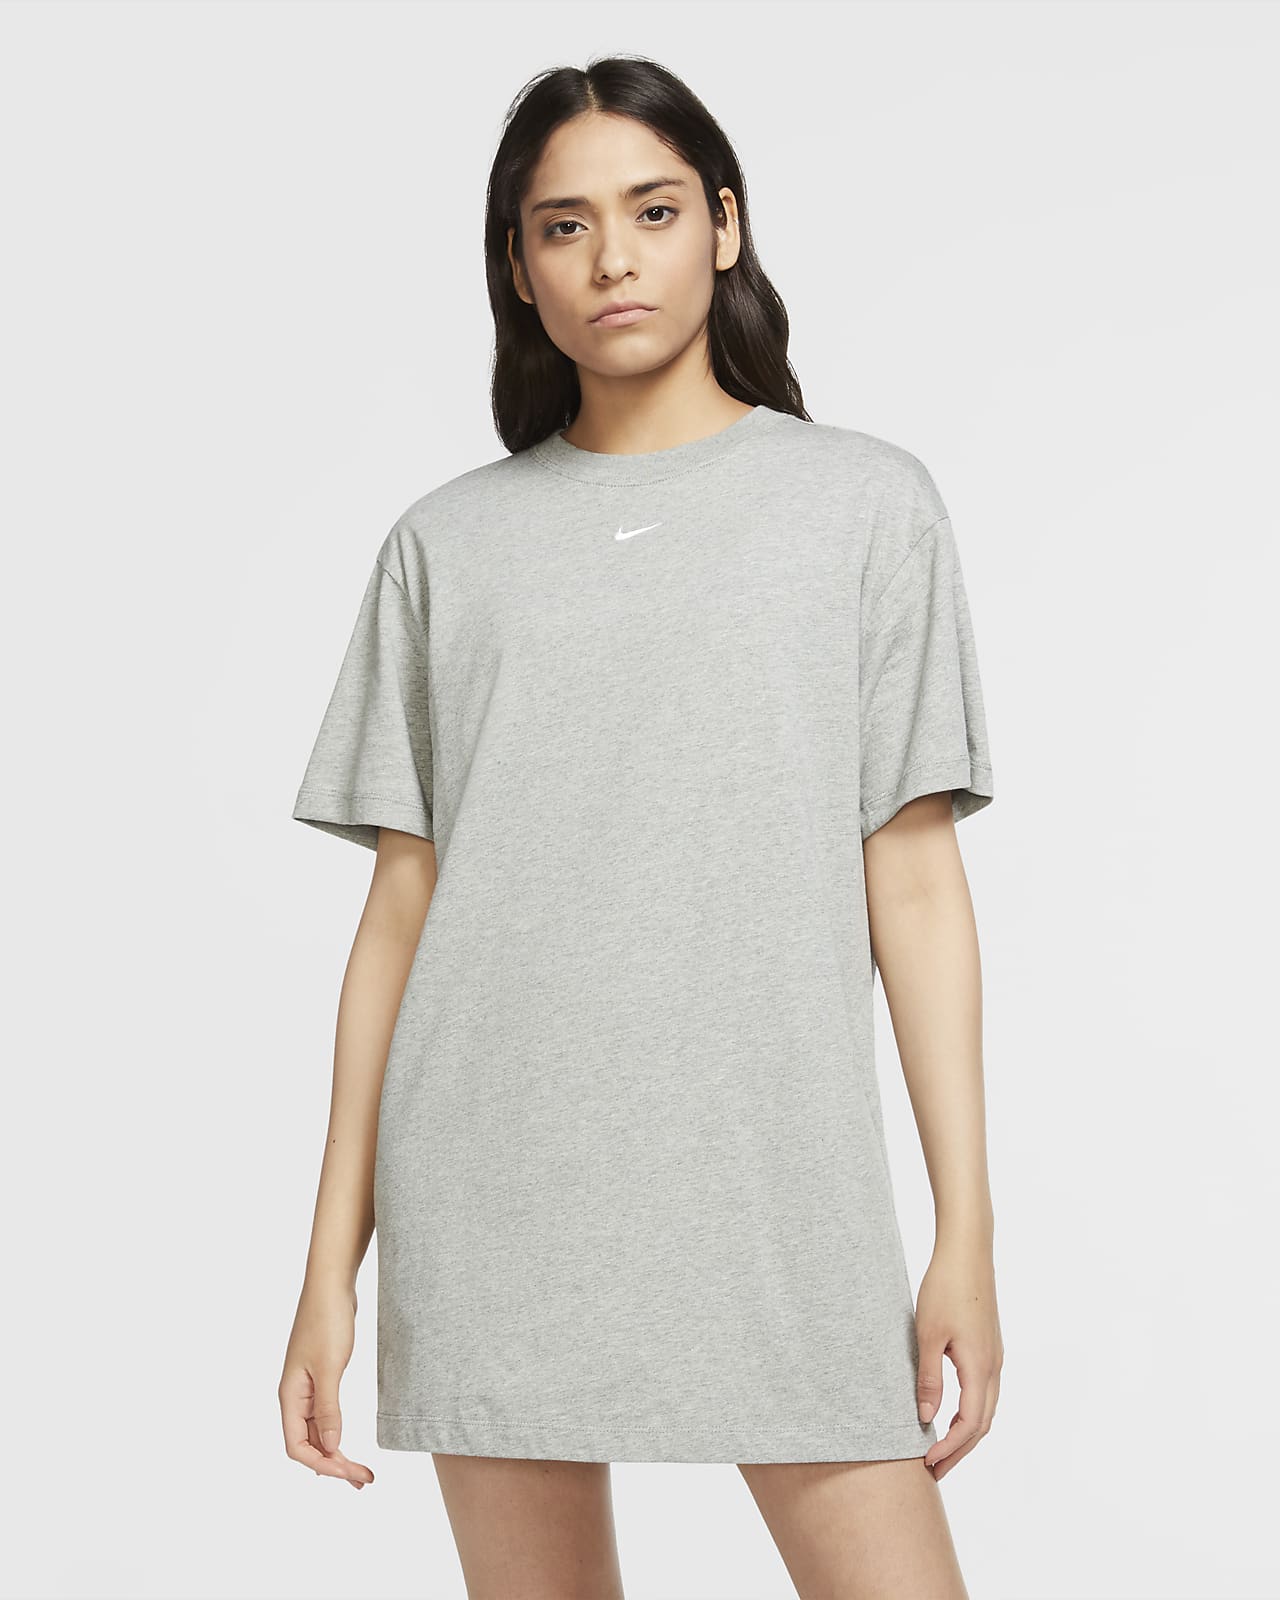 Nike Sportswear Essential Kadın Elbisesi